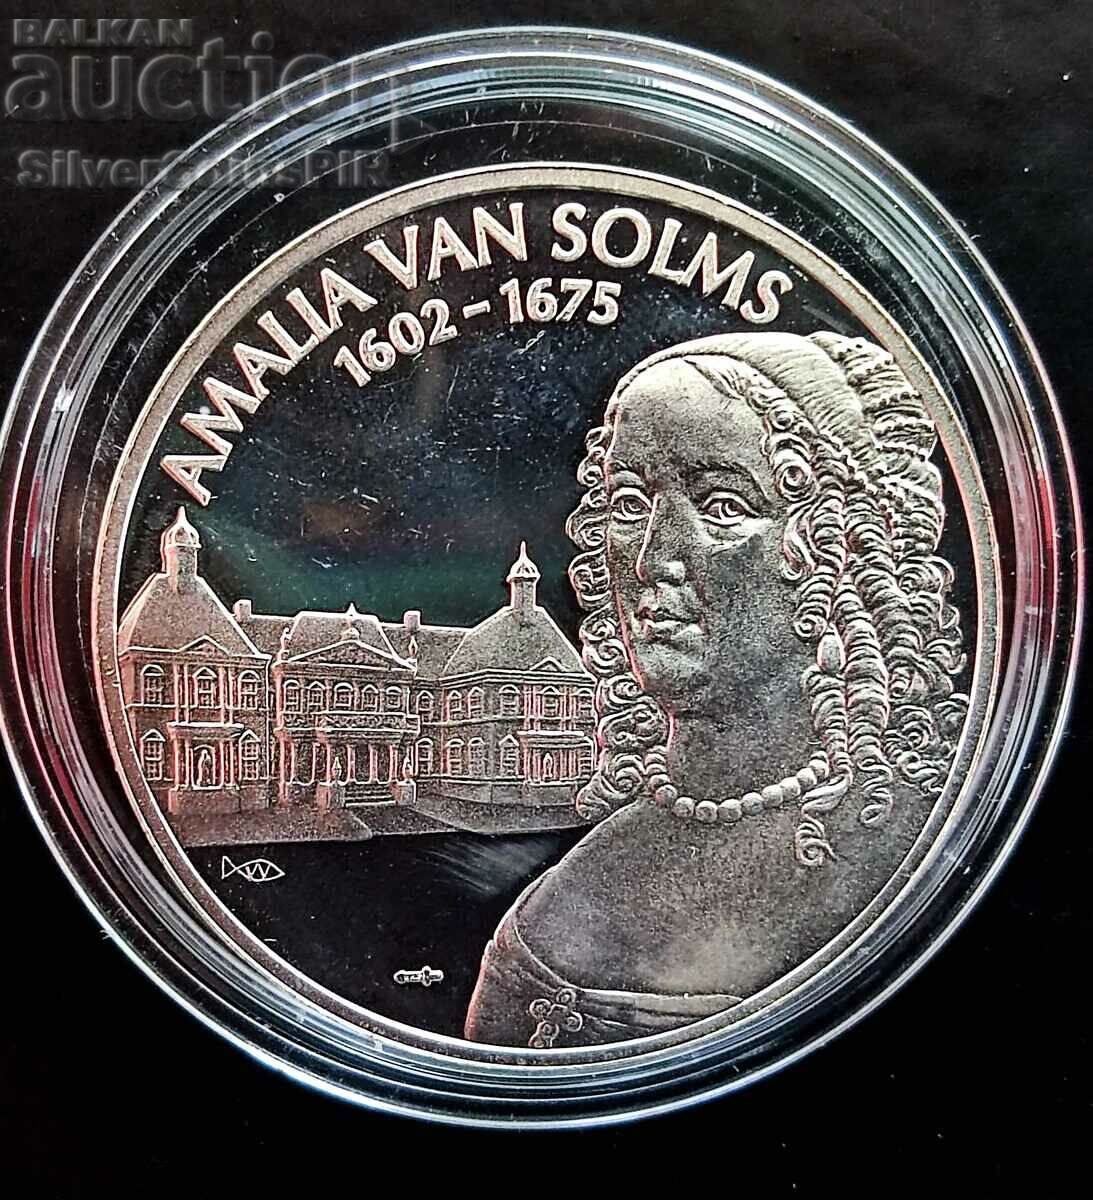 Ασημένιο μετάλλιο Amelia van Sooms Ολλανδία